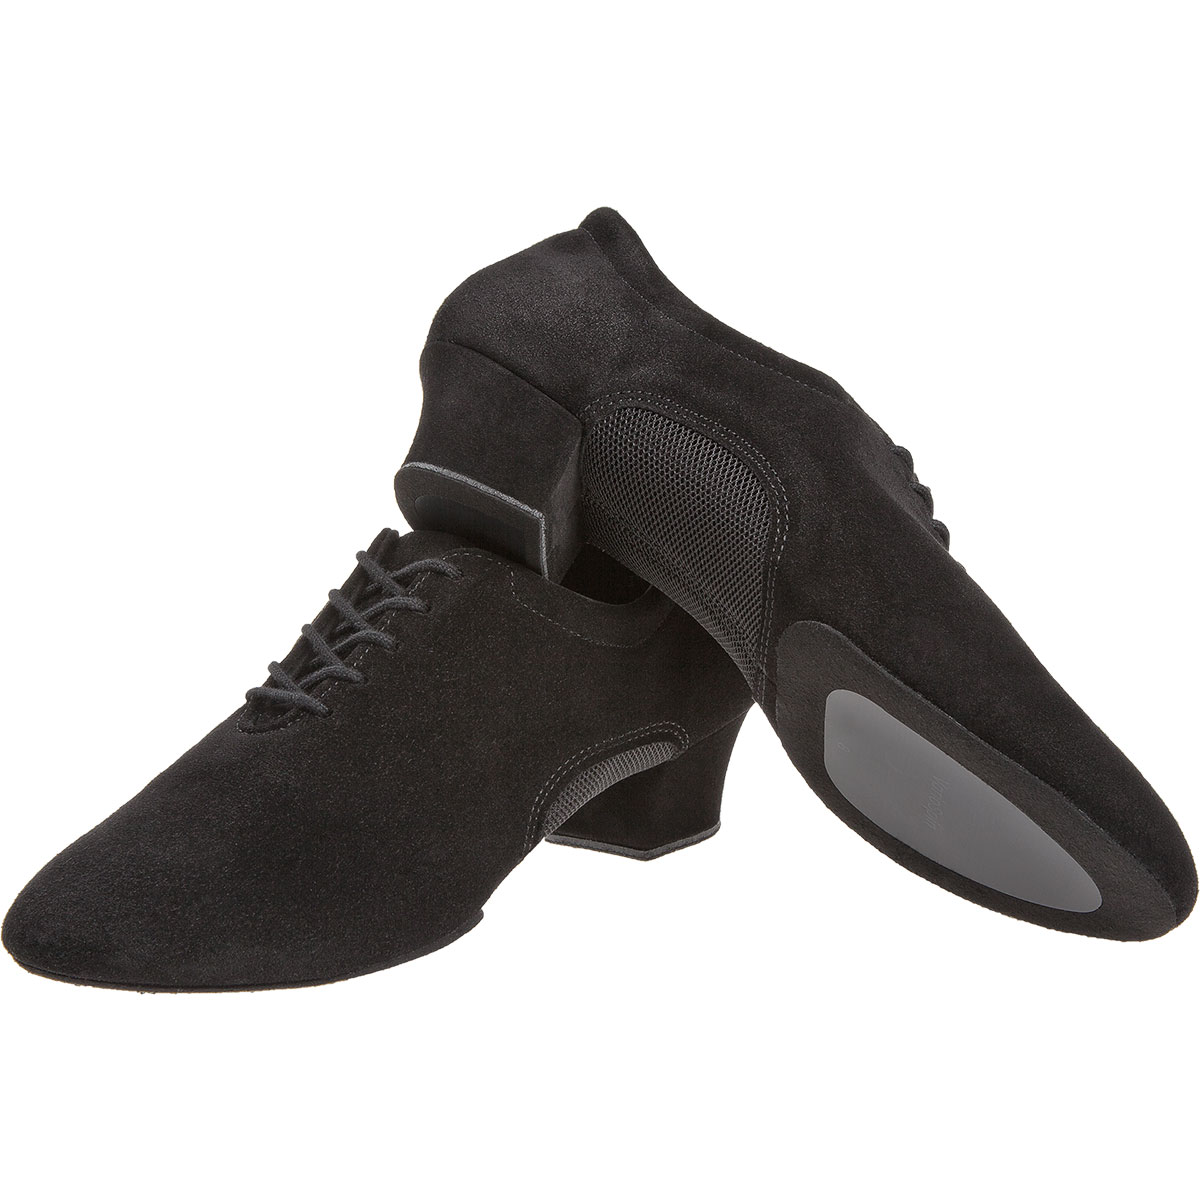 Diamant - Men´s Dance Shoes 163-124-577 - Black Leather/Mesh